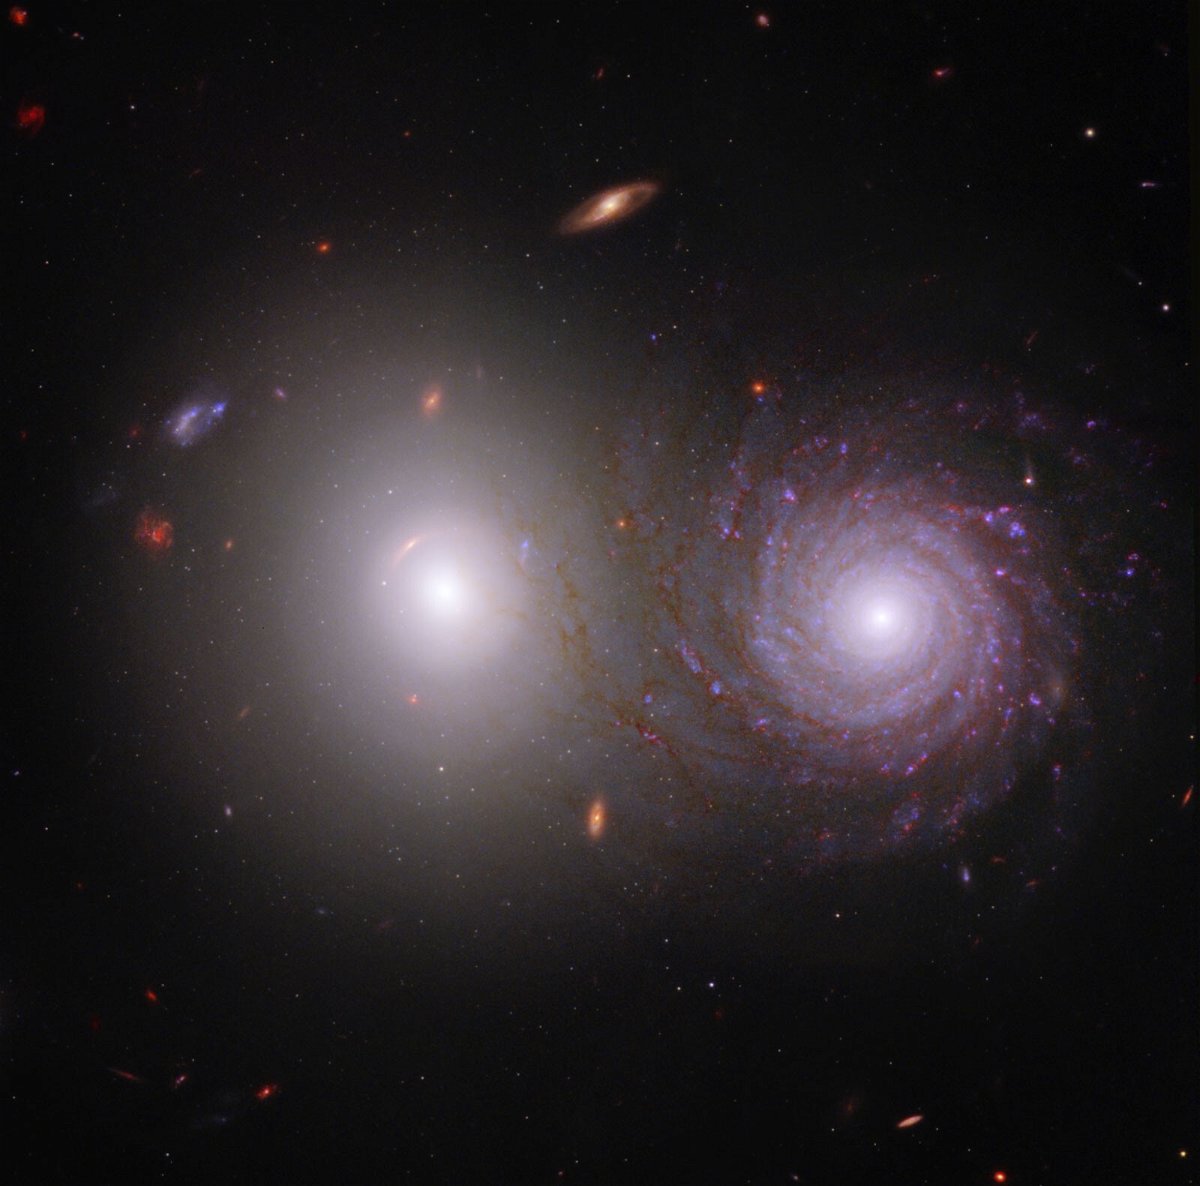 <i>NASA/ESA/CSA/ASU/UA/UM/JWST PEARLs Team</i><br/>A new image from the James Webb space Telescope showcasing a galactic pair